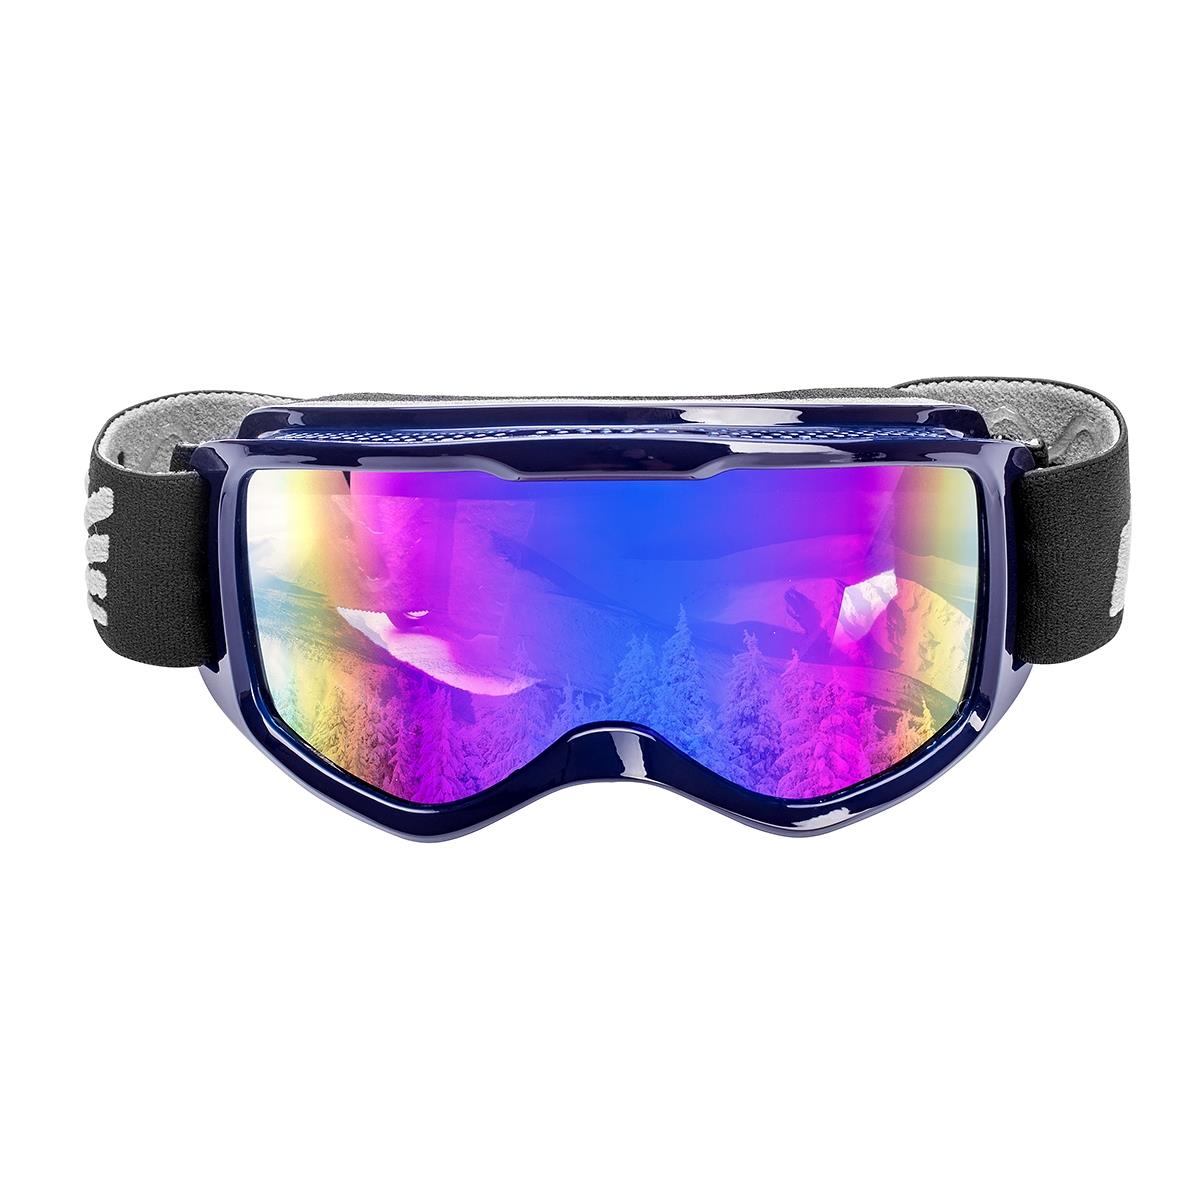 Очки горнолыжные HS-HX-040 Helios очки для плавания взрослые беруши голубой